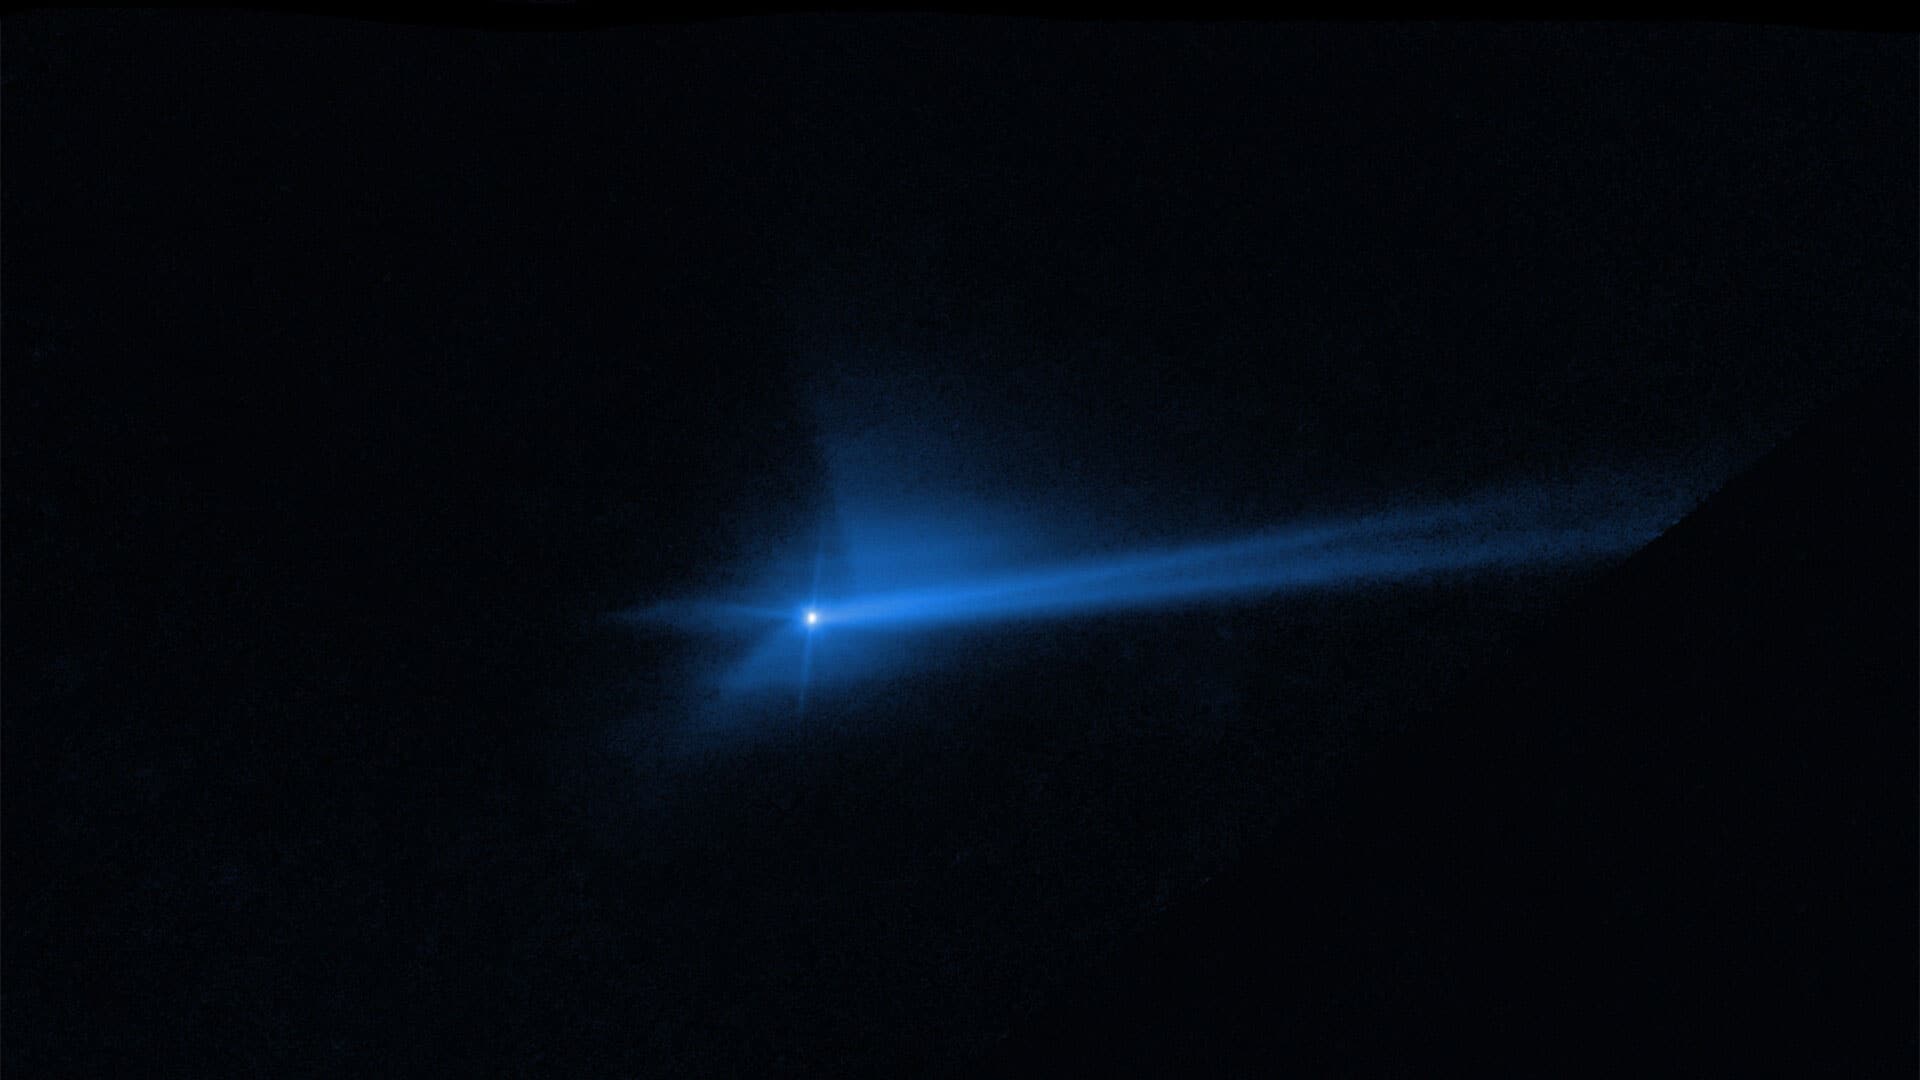 Hubble captures DART asteroid impact debris (clean)